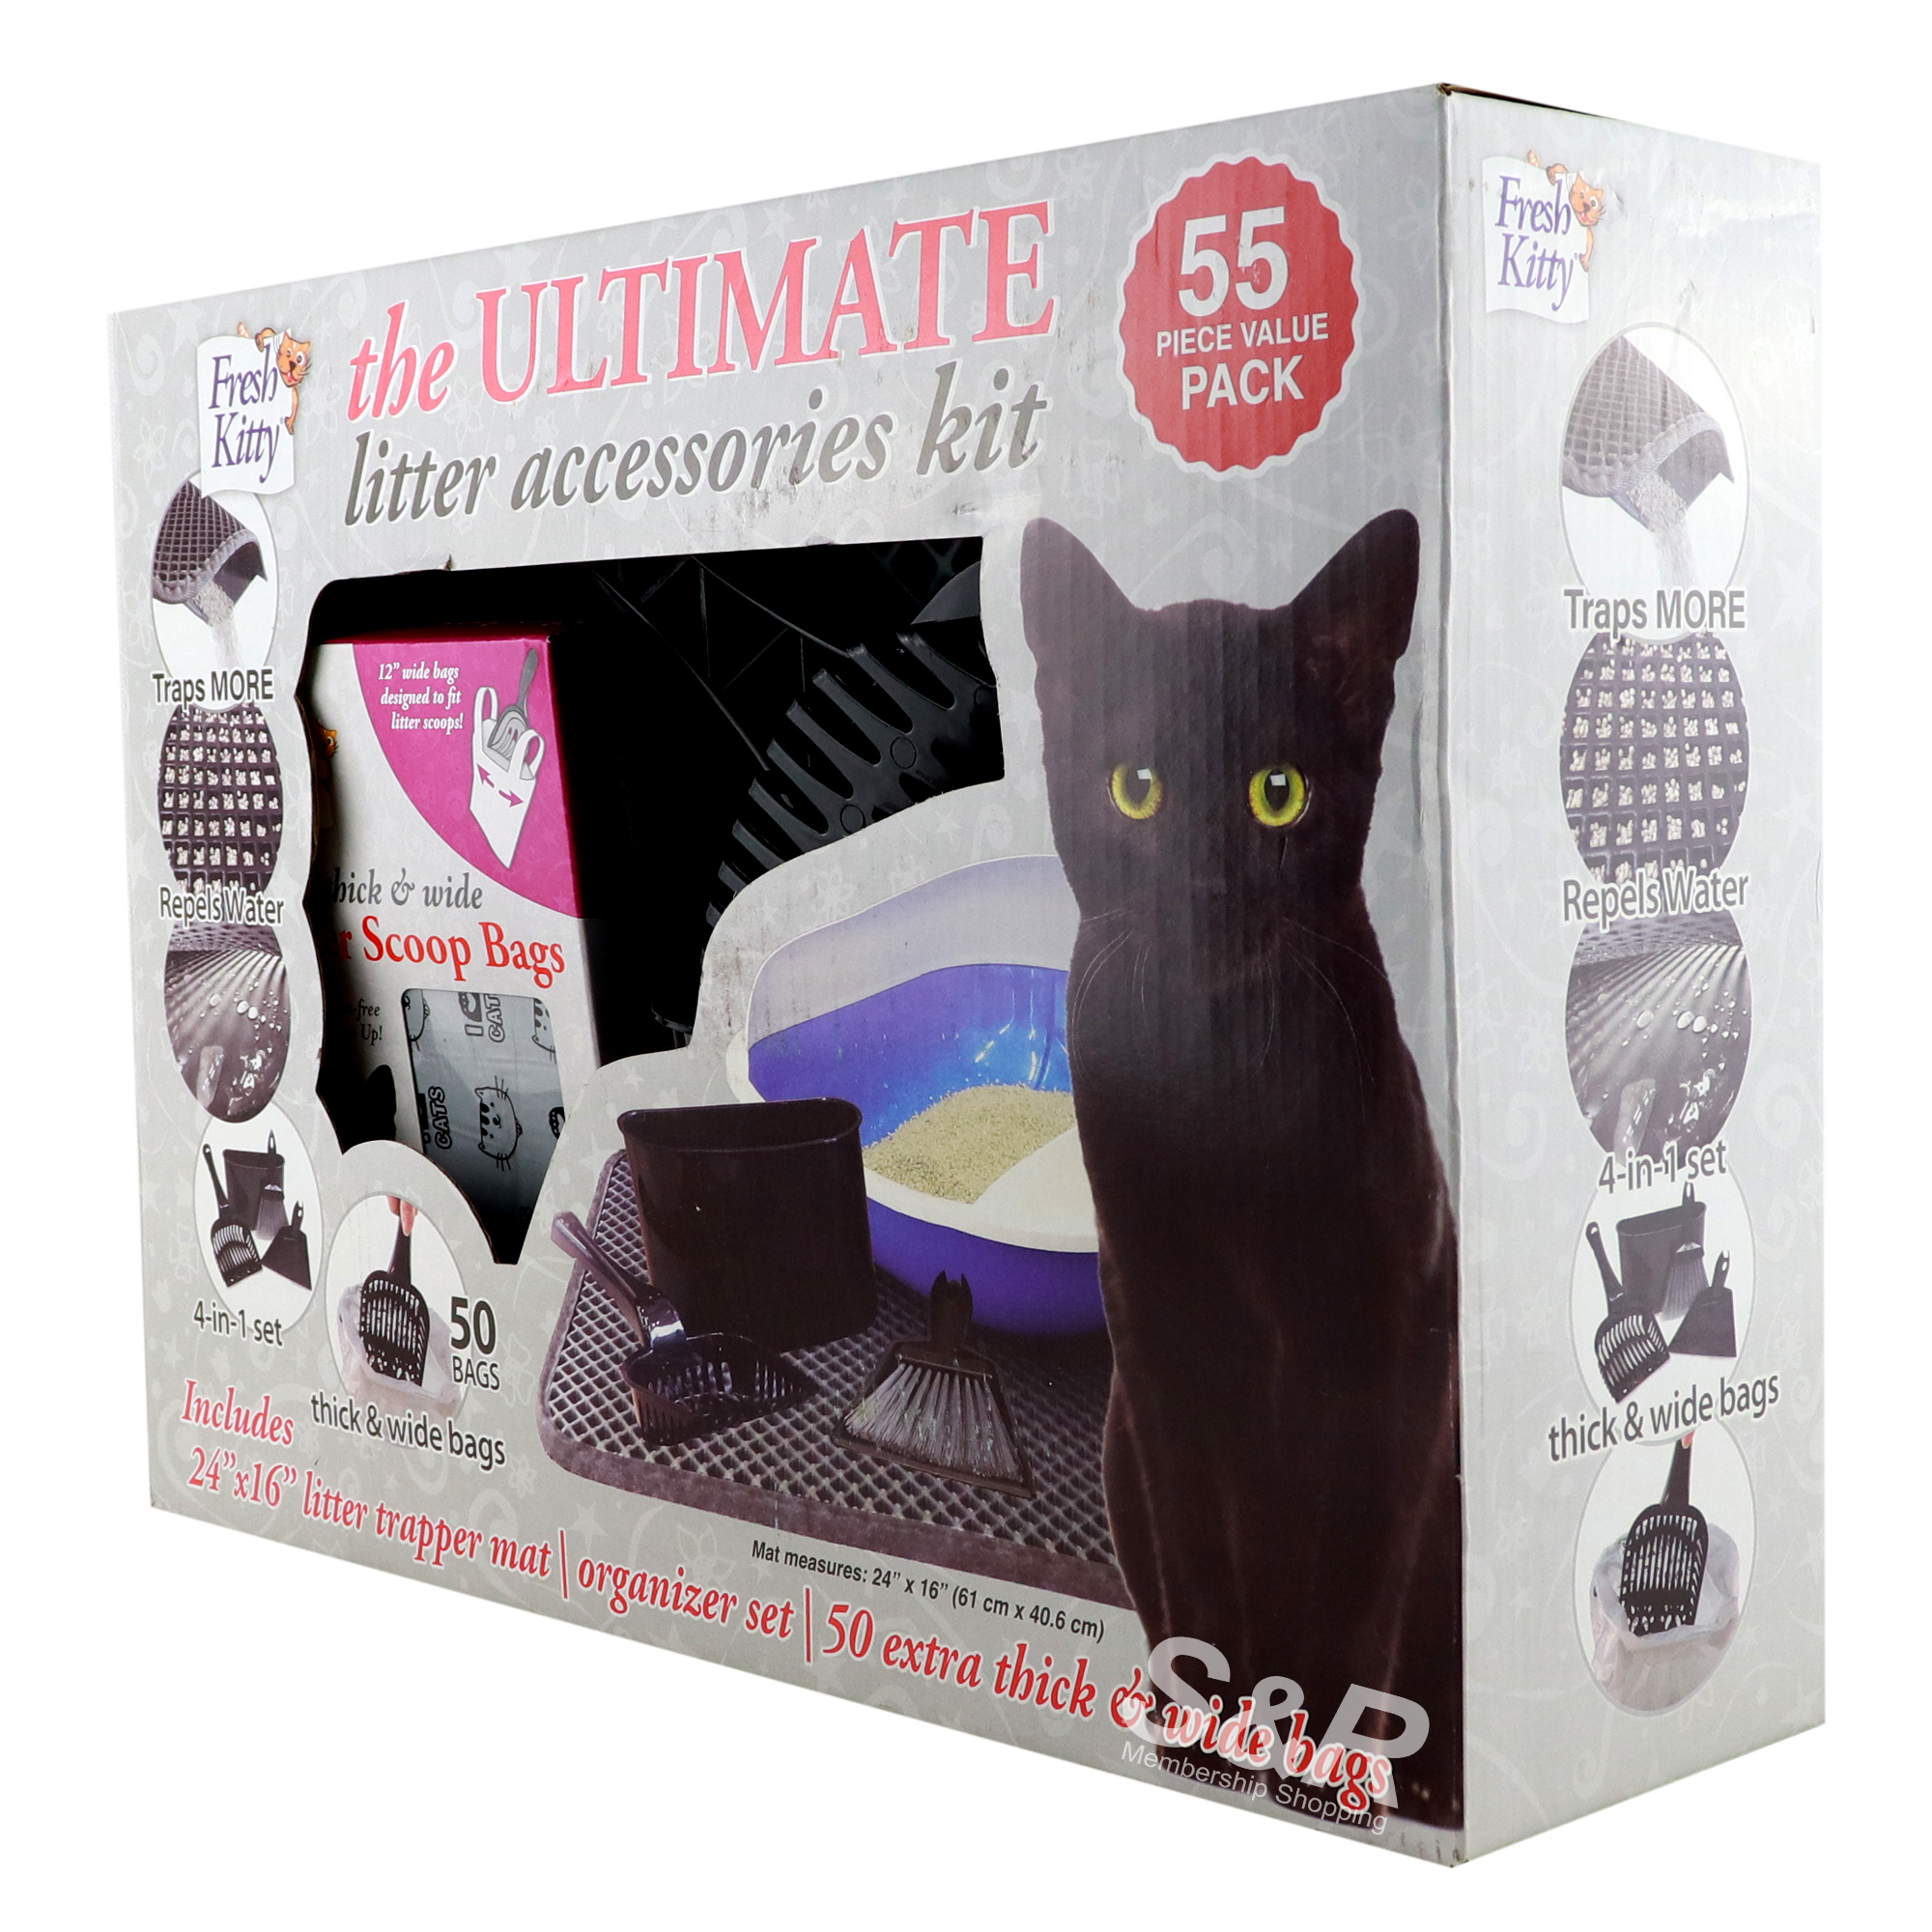 Kitty Litter Accessories Kit